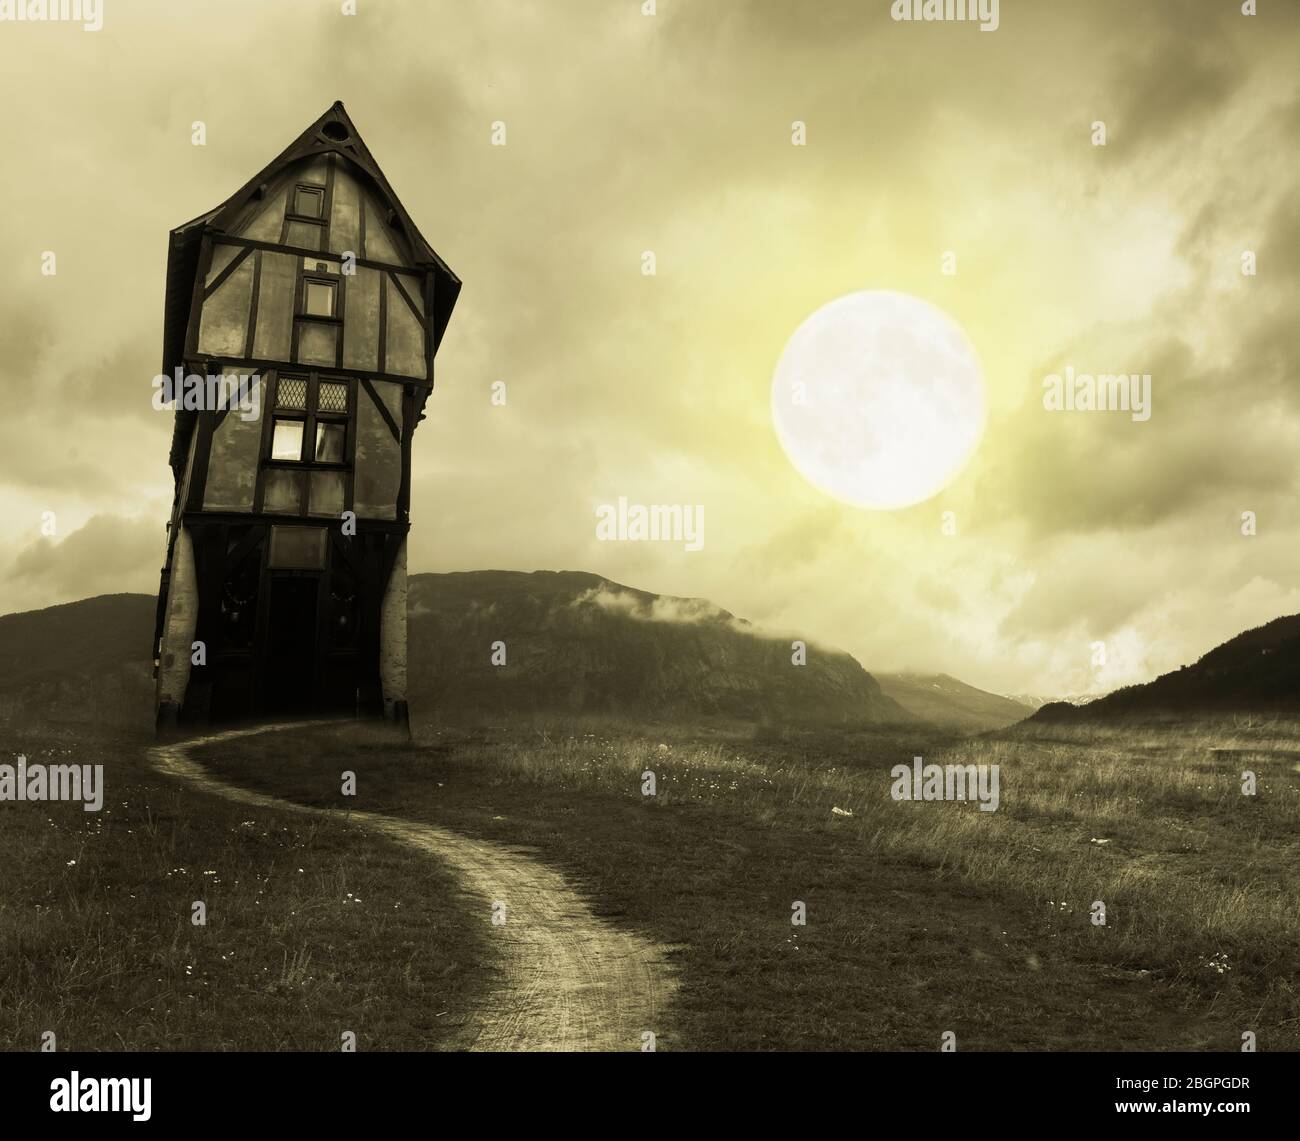 Halloween apocalyptique décor avec ancienne maison et la lune Banque D'Images